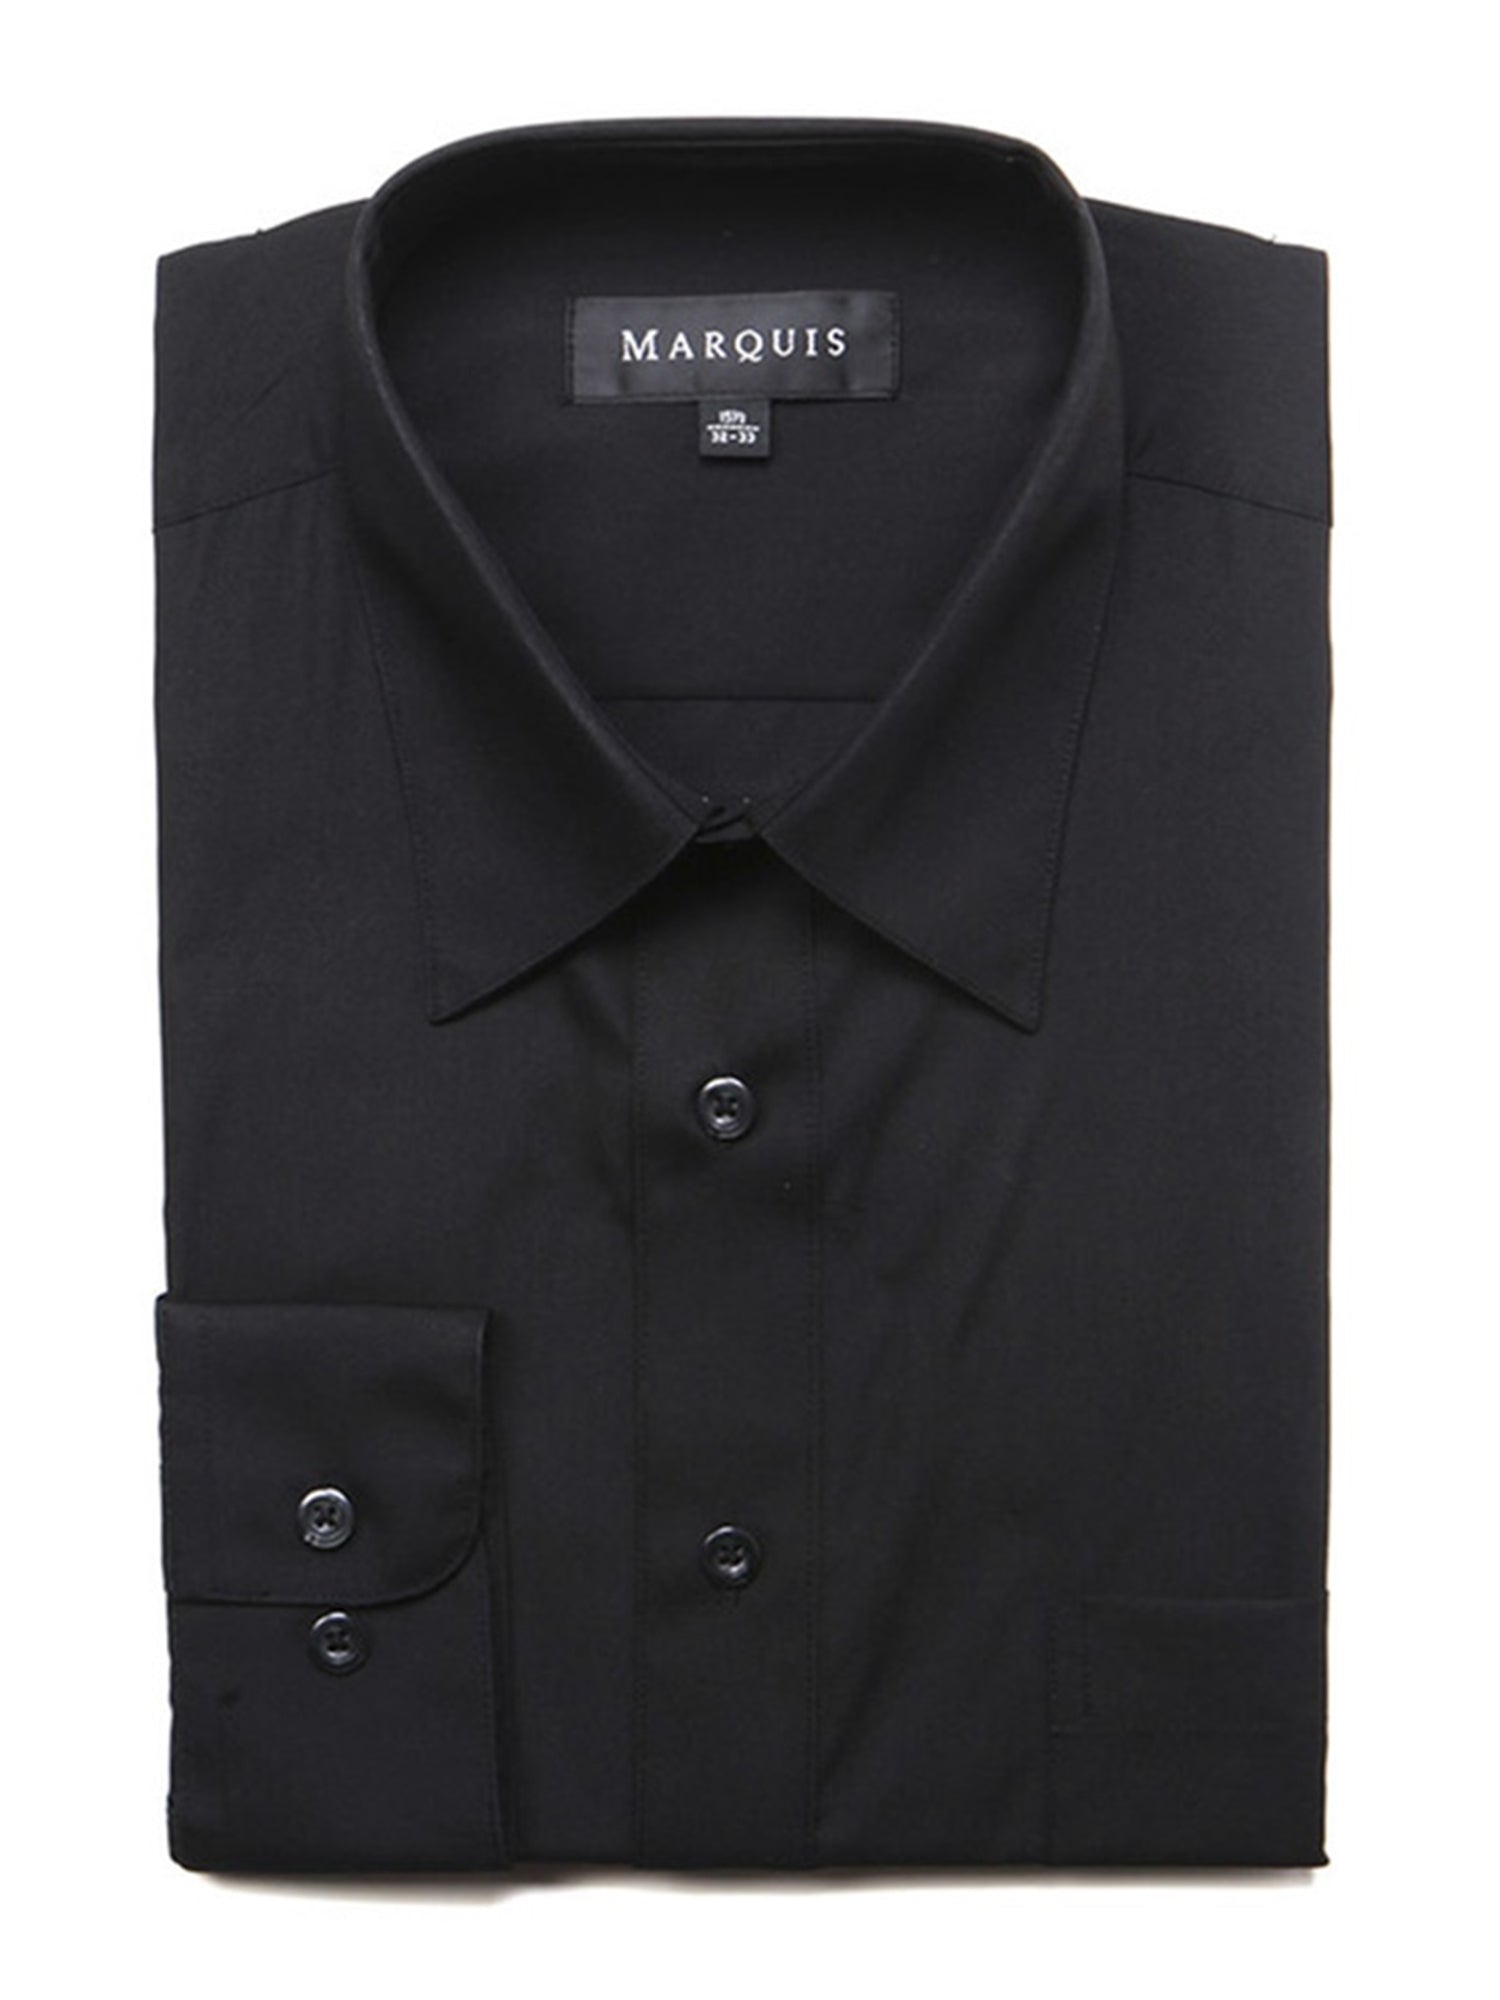 Marquis Men's Long Sleeve Regular Fit Dress Shirt Dress Shirt Marquis Black 14.5 Neck 32/33 Sleeve 